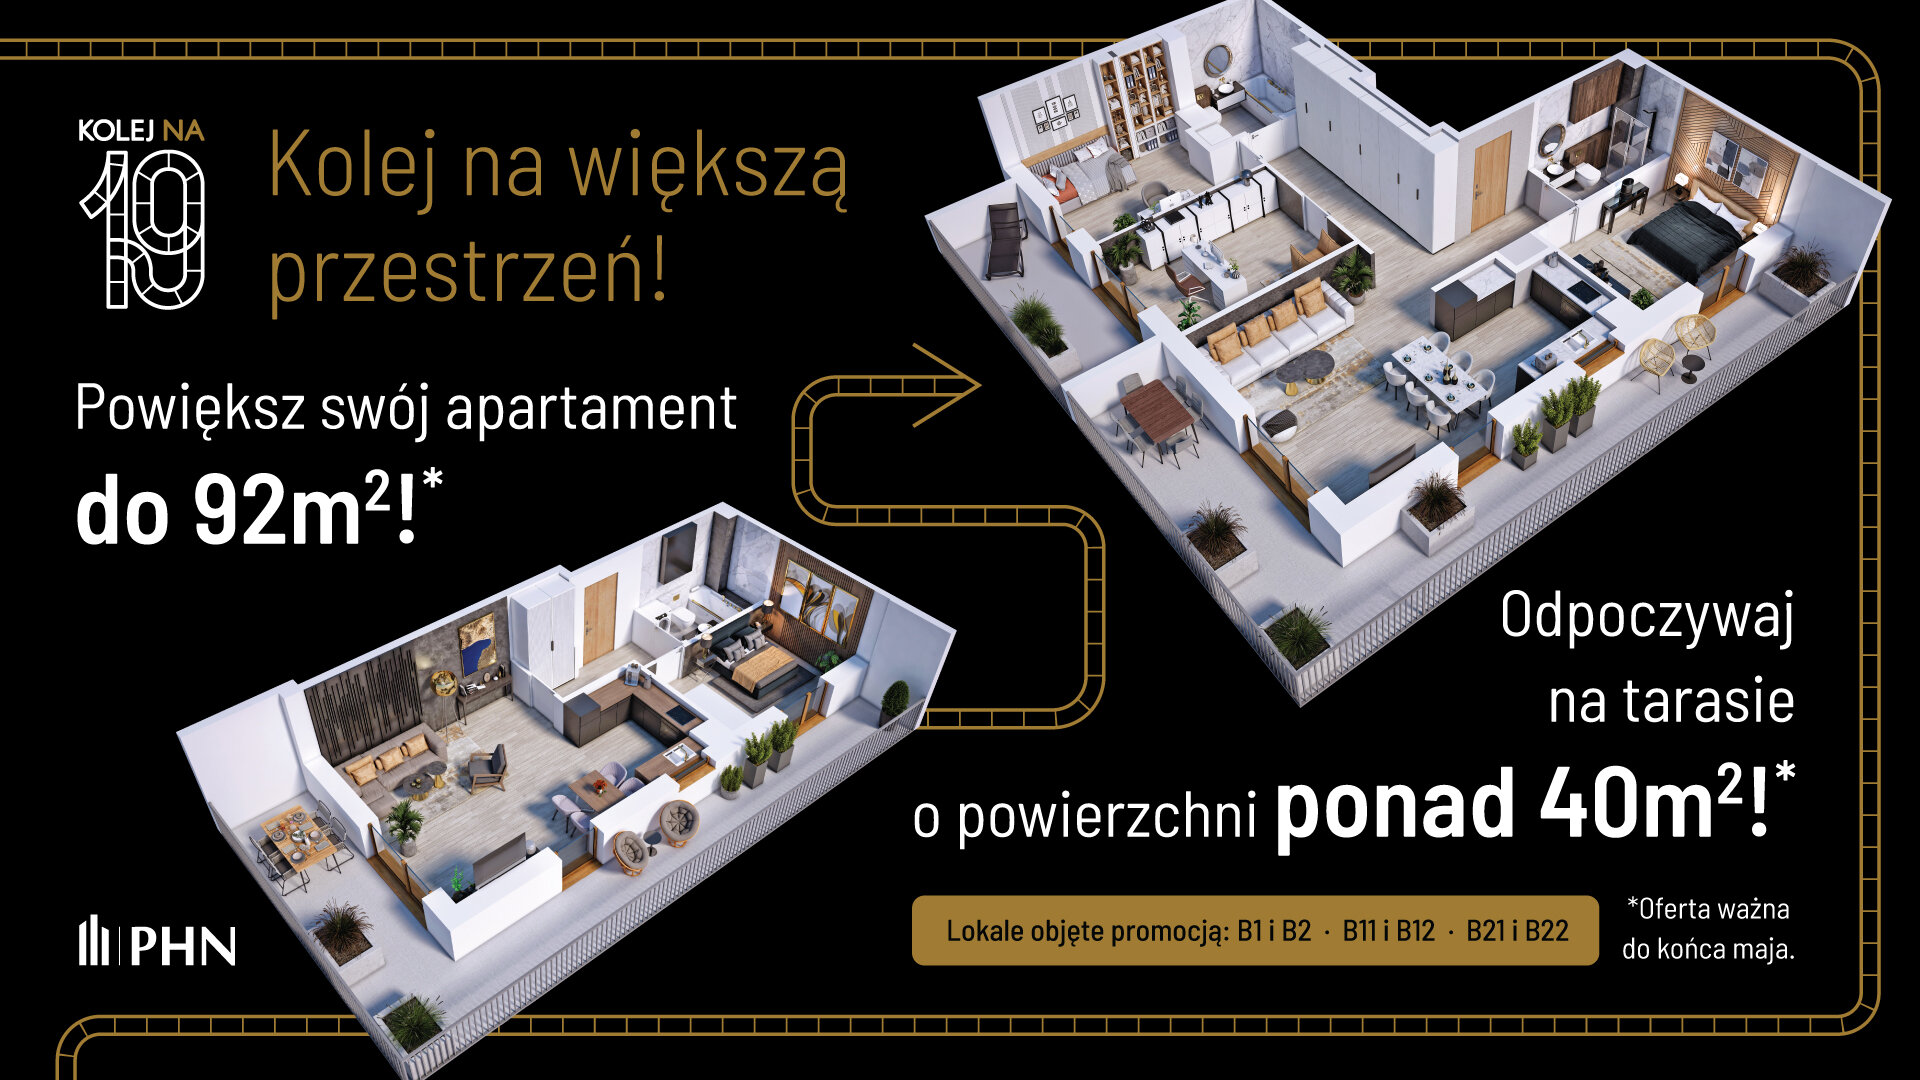 Wiosenna promocja w KOLEJ NA 19 - Apartament, 3 pokoje, Warszawa,57.81 m²,1 094 228 zł